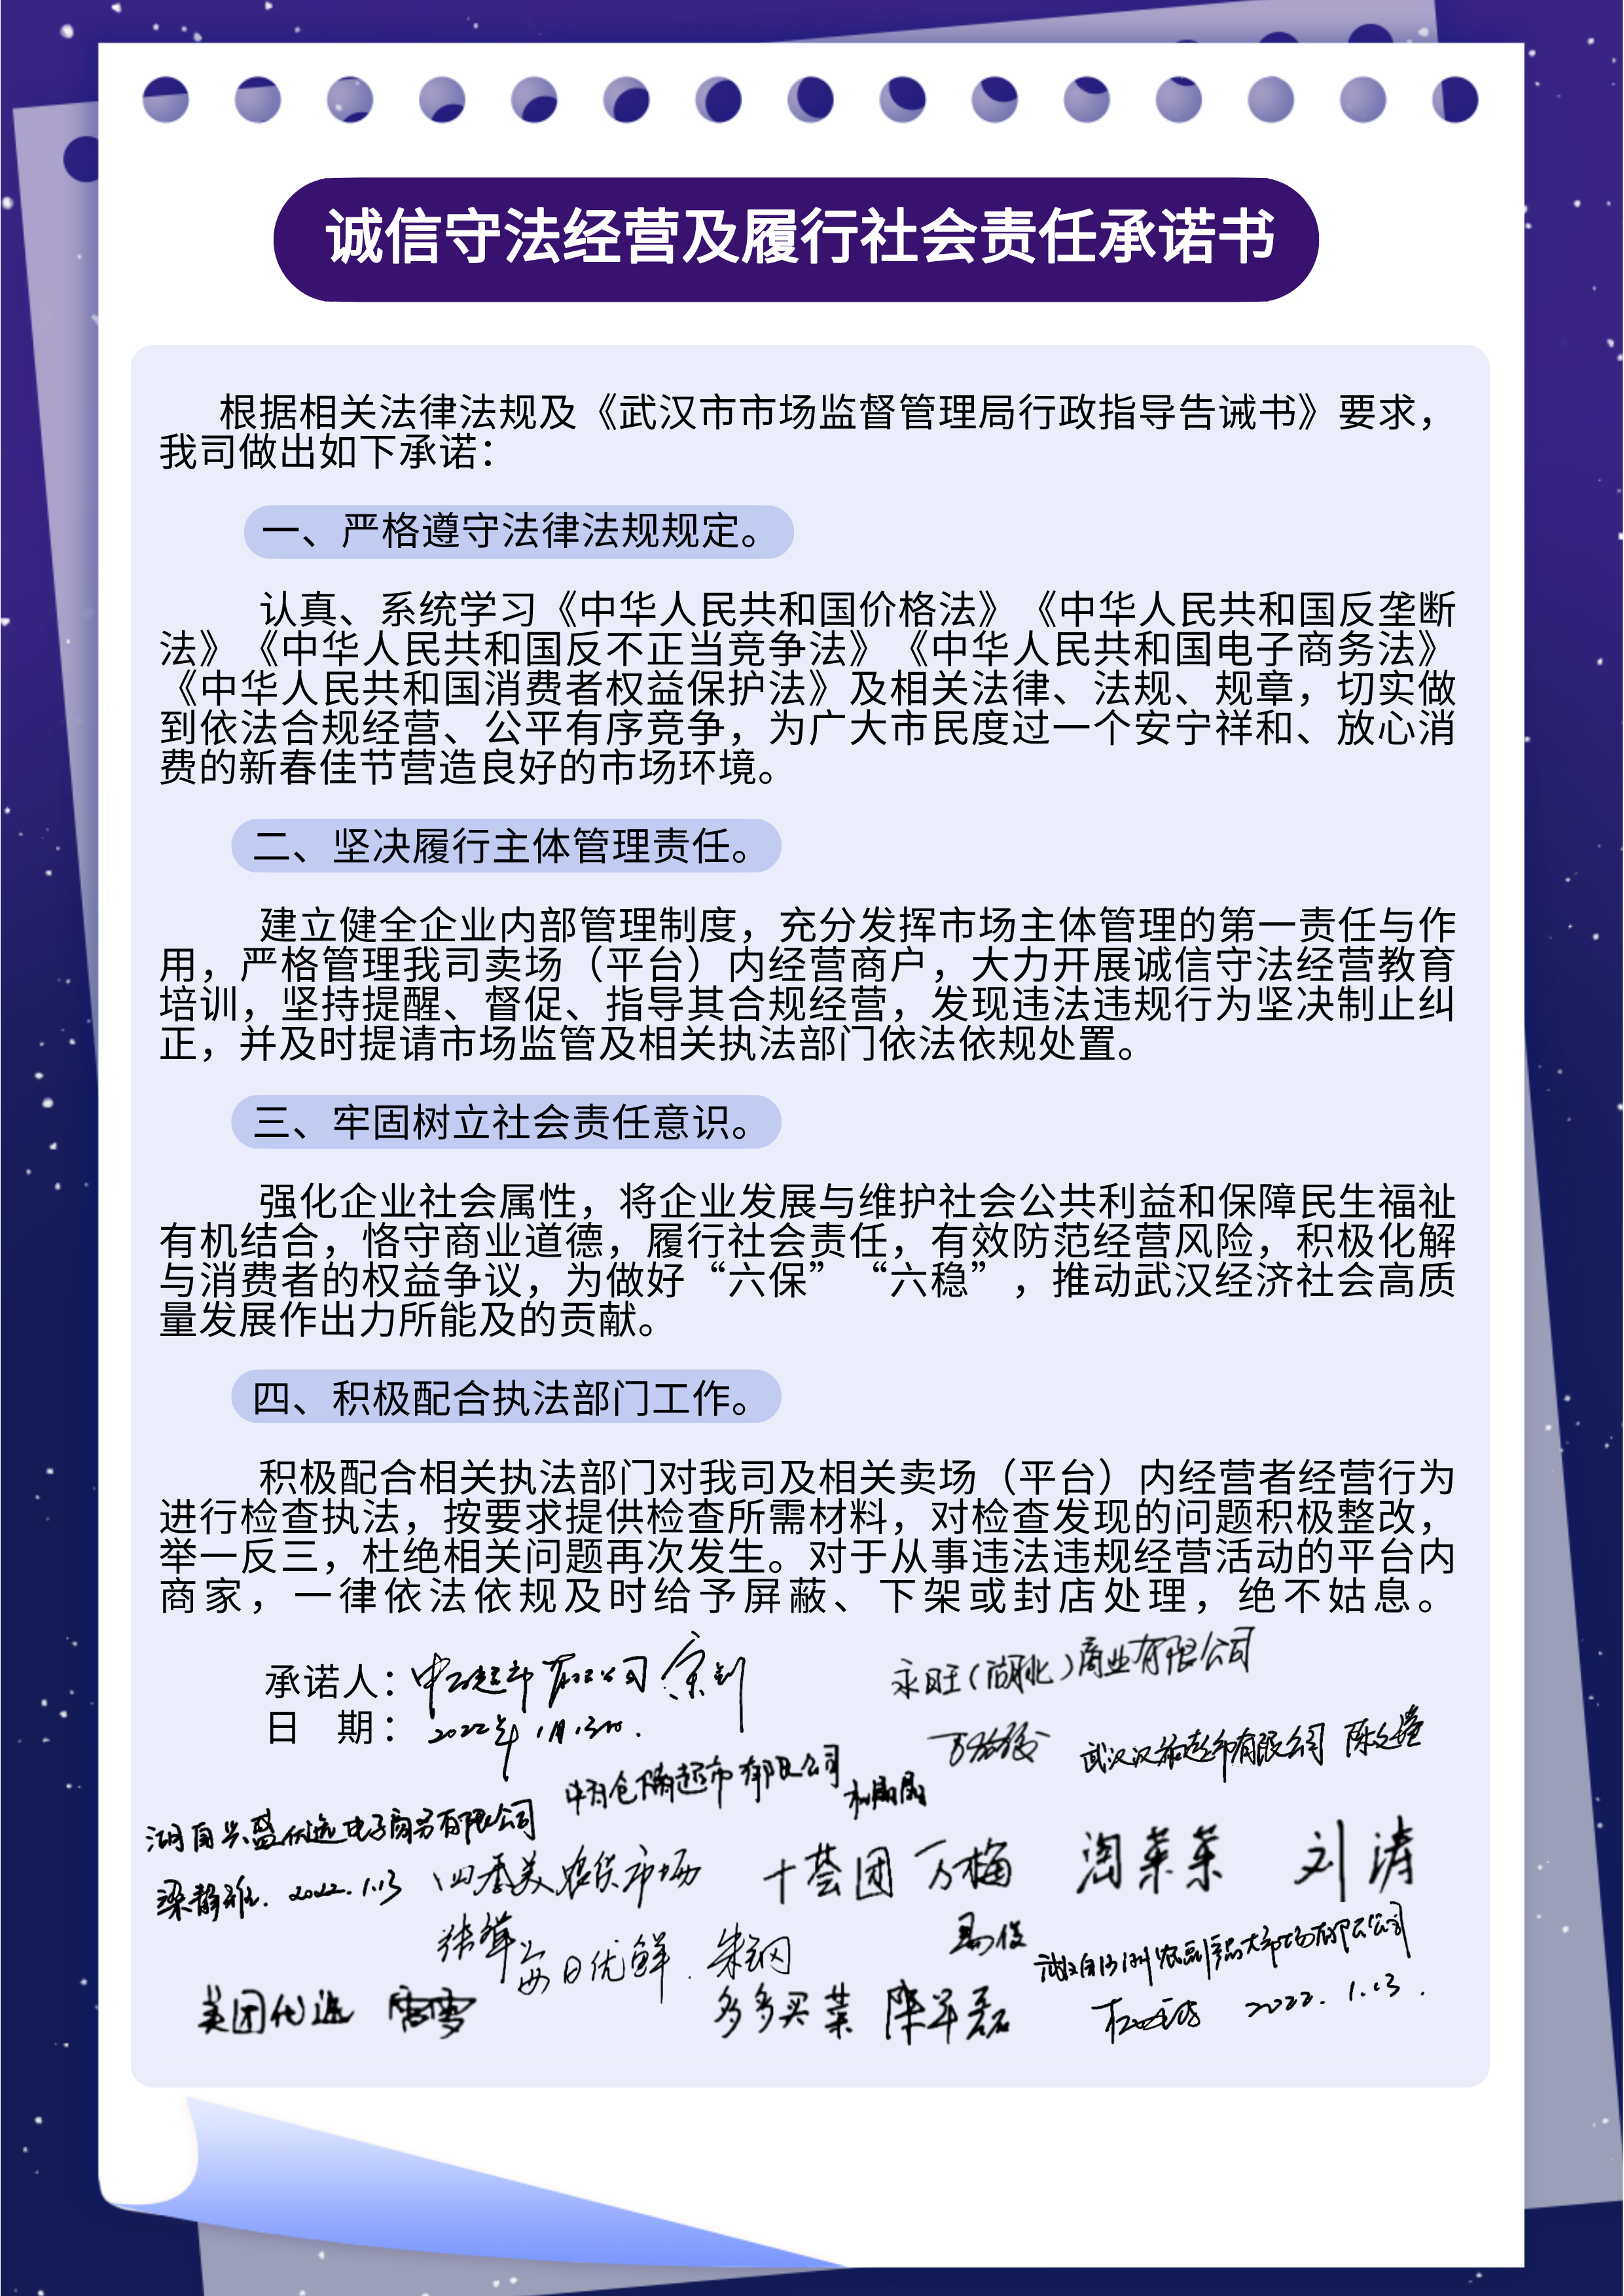 武汉13家企业签“应承书”春节、冬奥会时期“保供稳价”